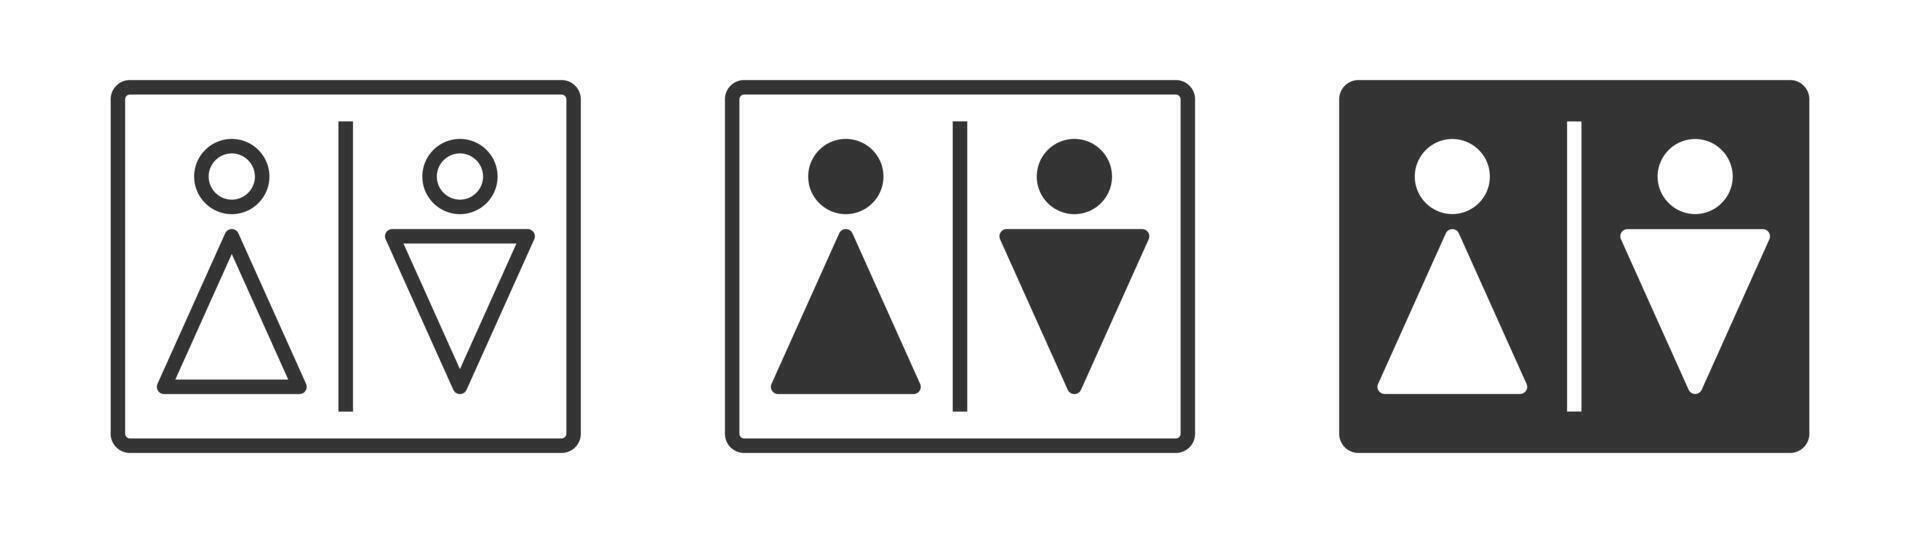 man och kvinna toalett ikon. vektor illustration.